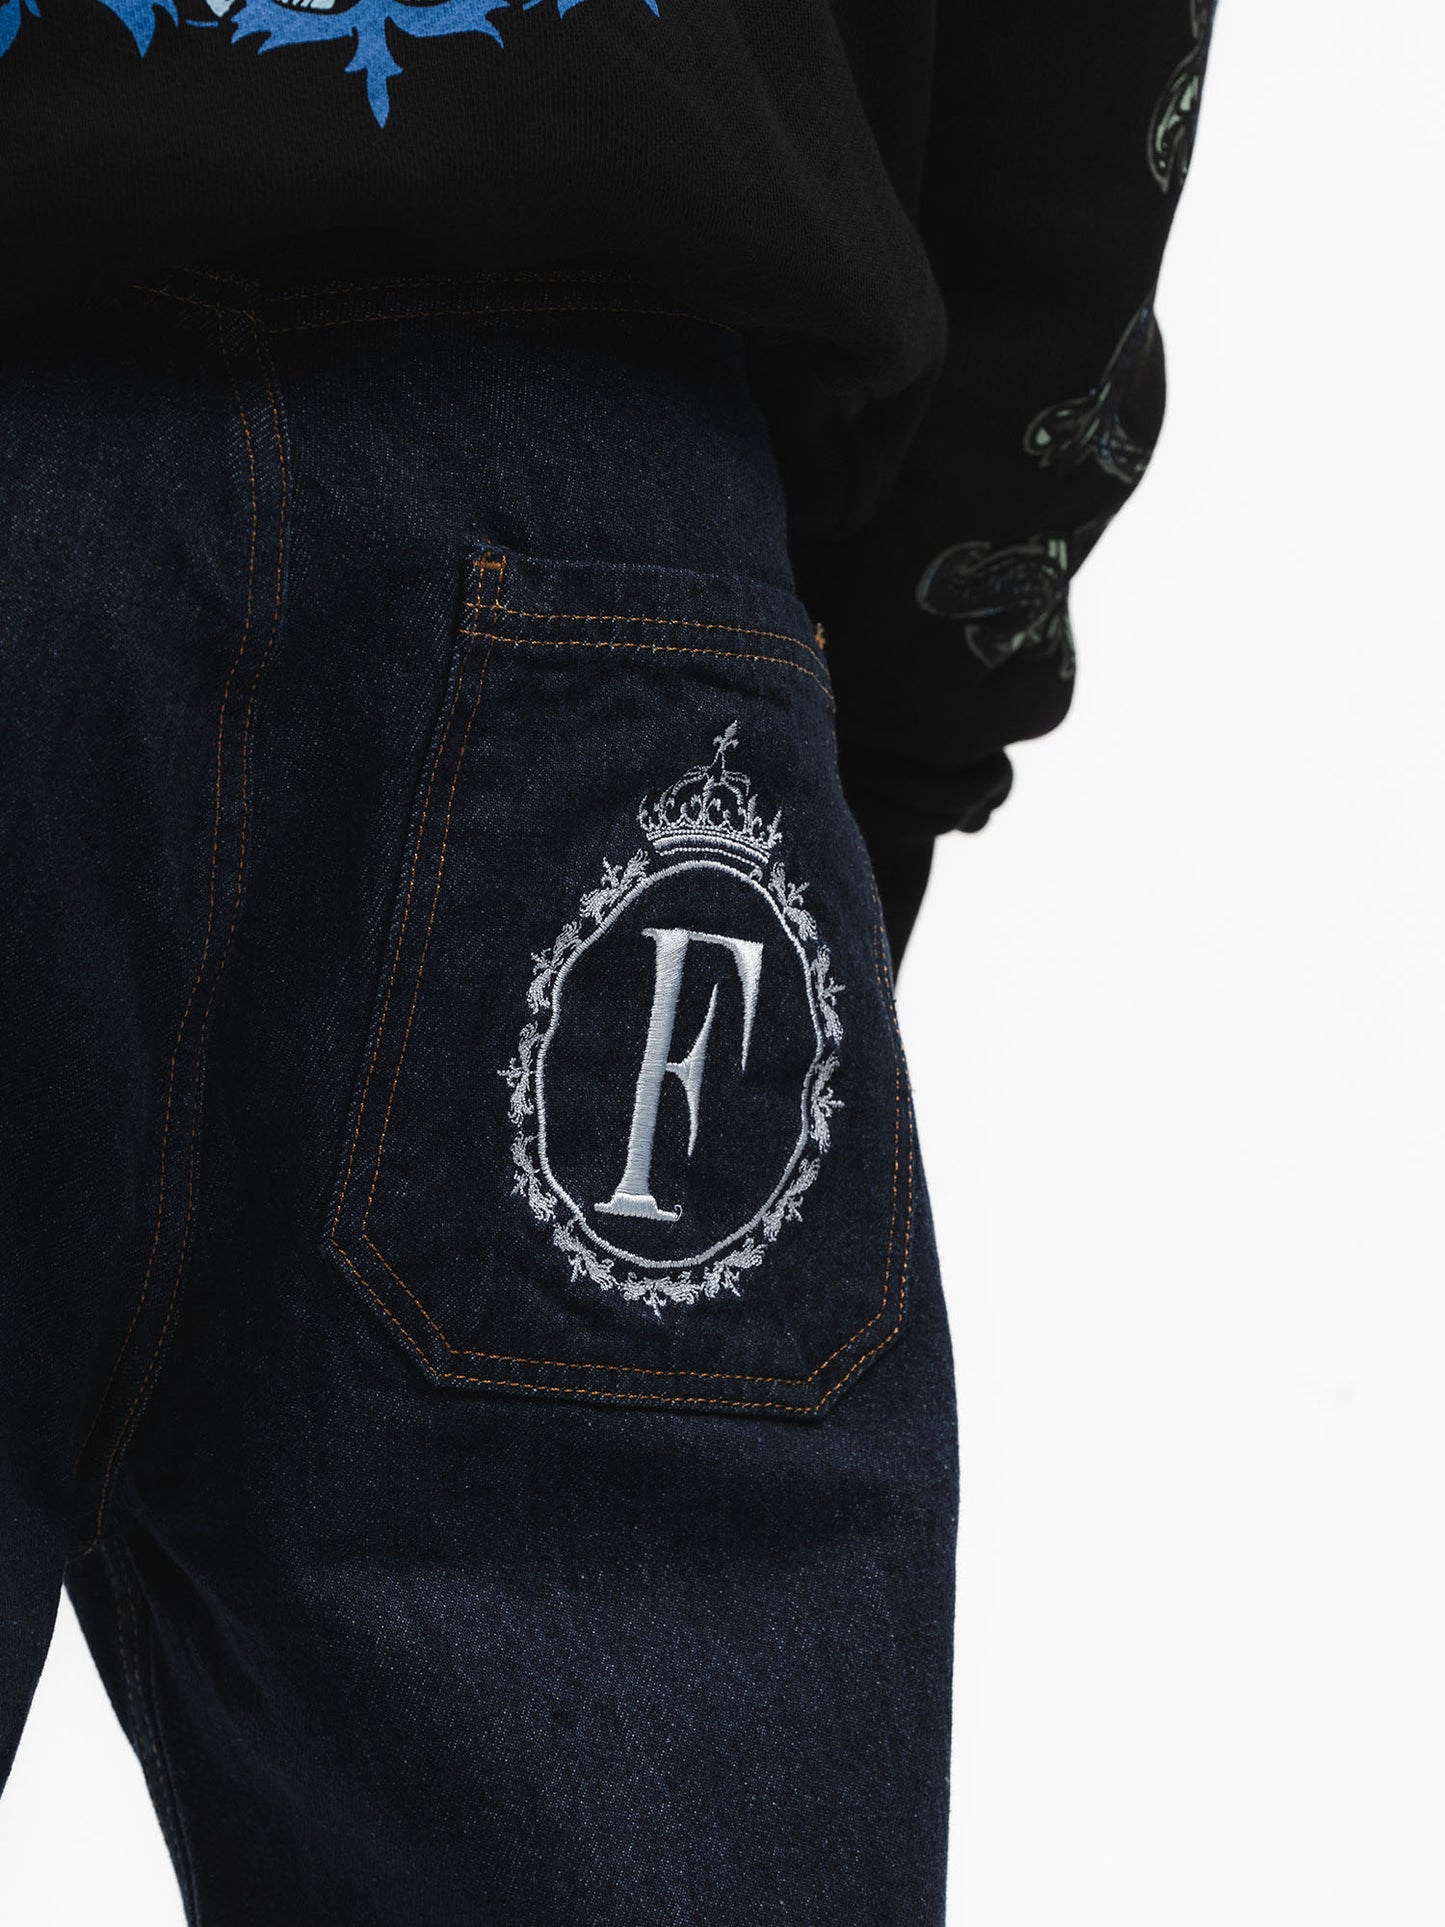 FINELLI Logo Jeans